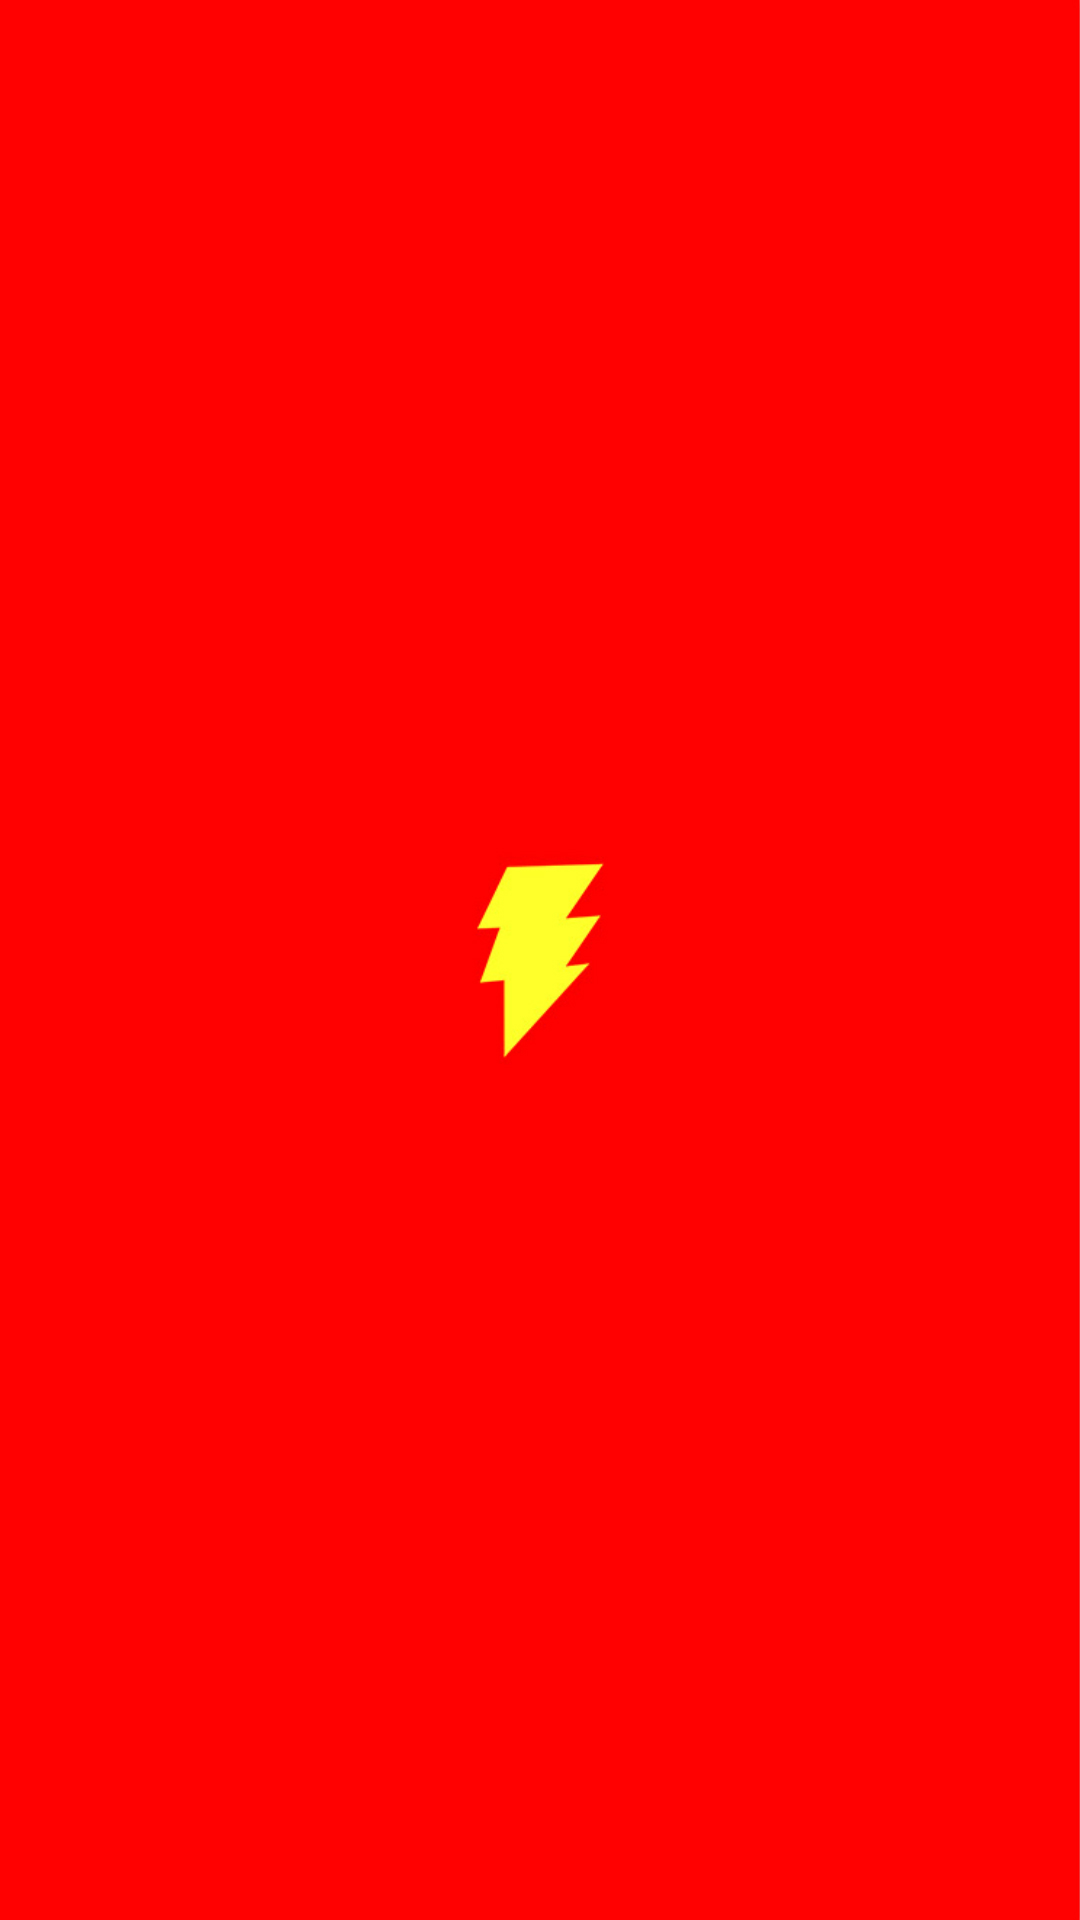 Flash Ic Hero Minimal Red Art Logo iPhone Wallpaper